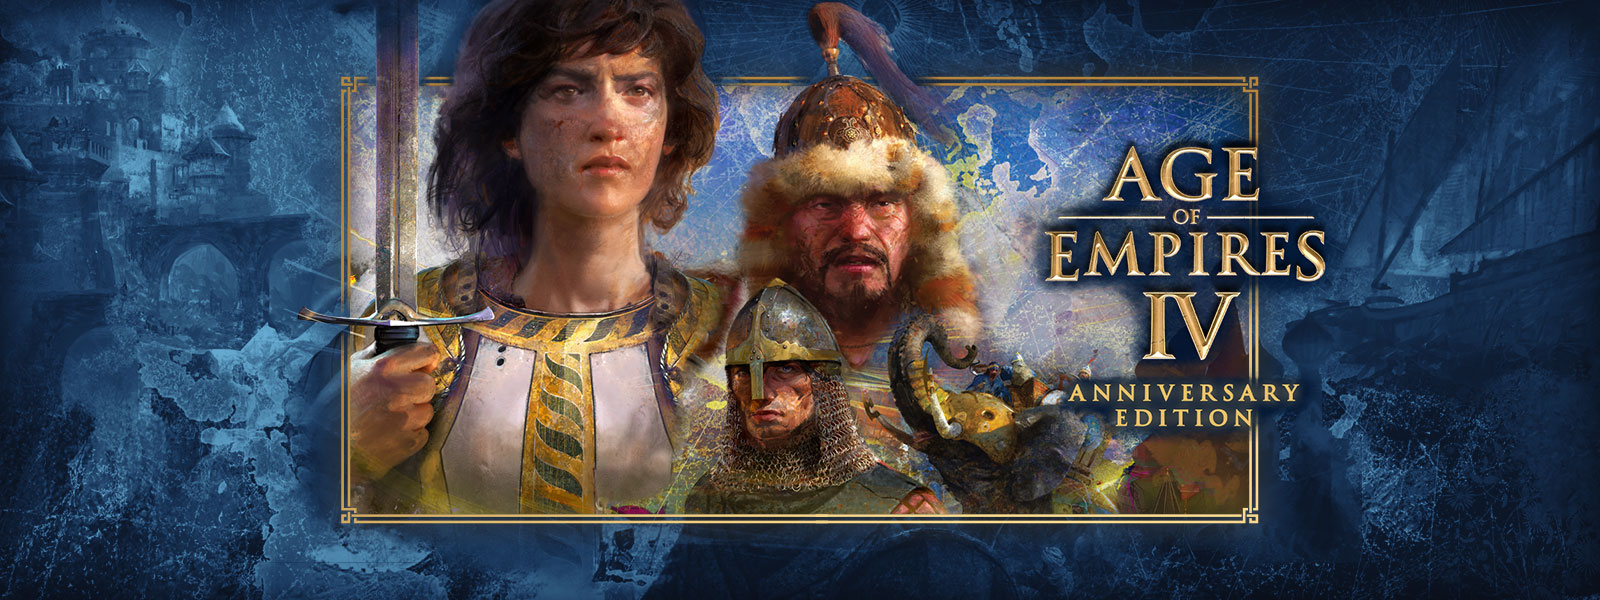 Age of Empires IV: Anniversary Edition. Três personagens com cenas de guerra e elefantes couraçados ao seu redor.